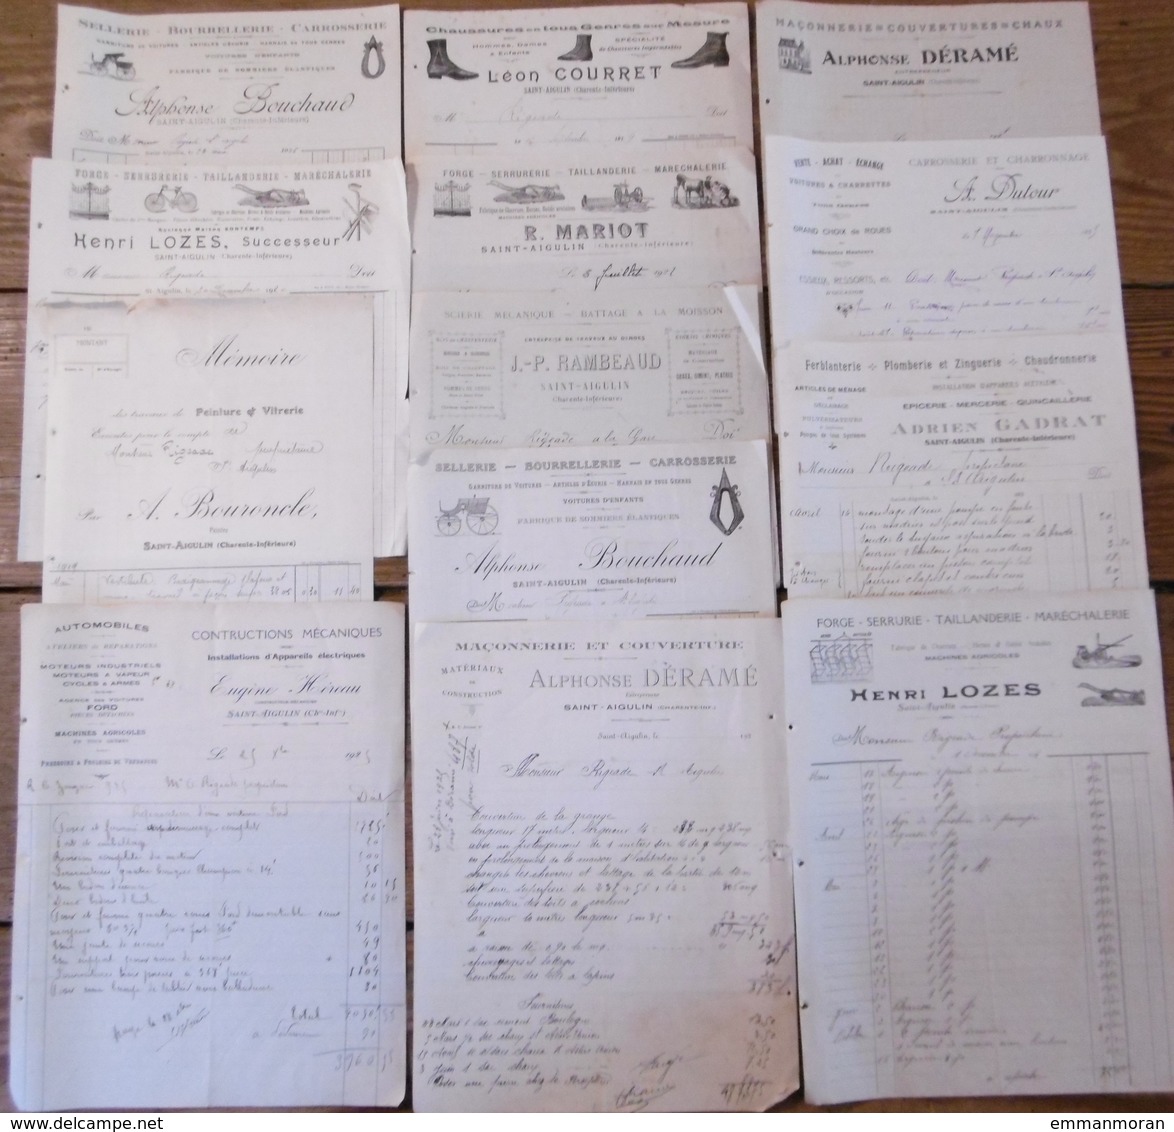 Lot 13 factures de diverses entreprises situées à Saint Aigulin (charente inférieure) années 20